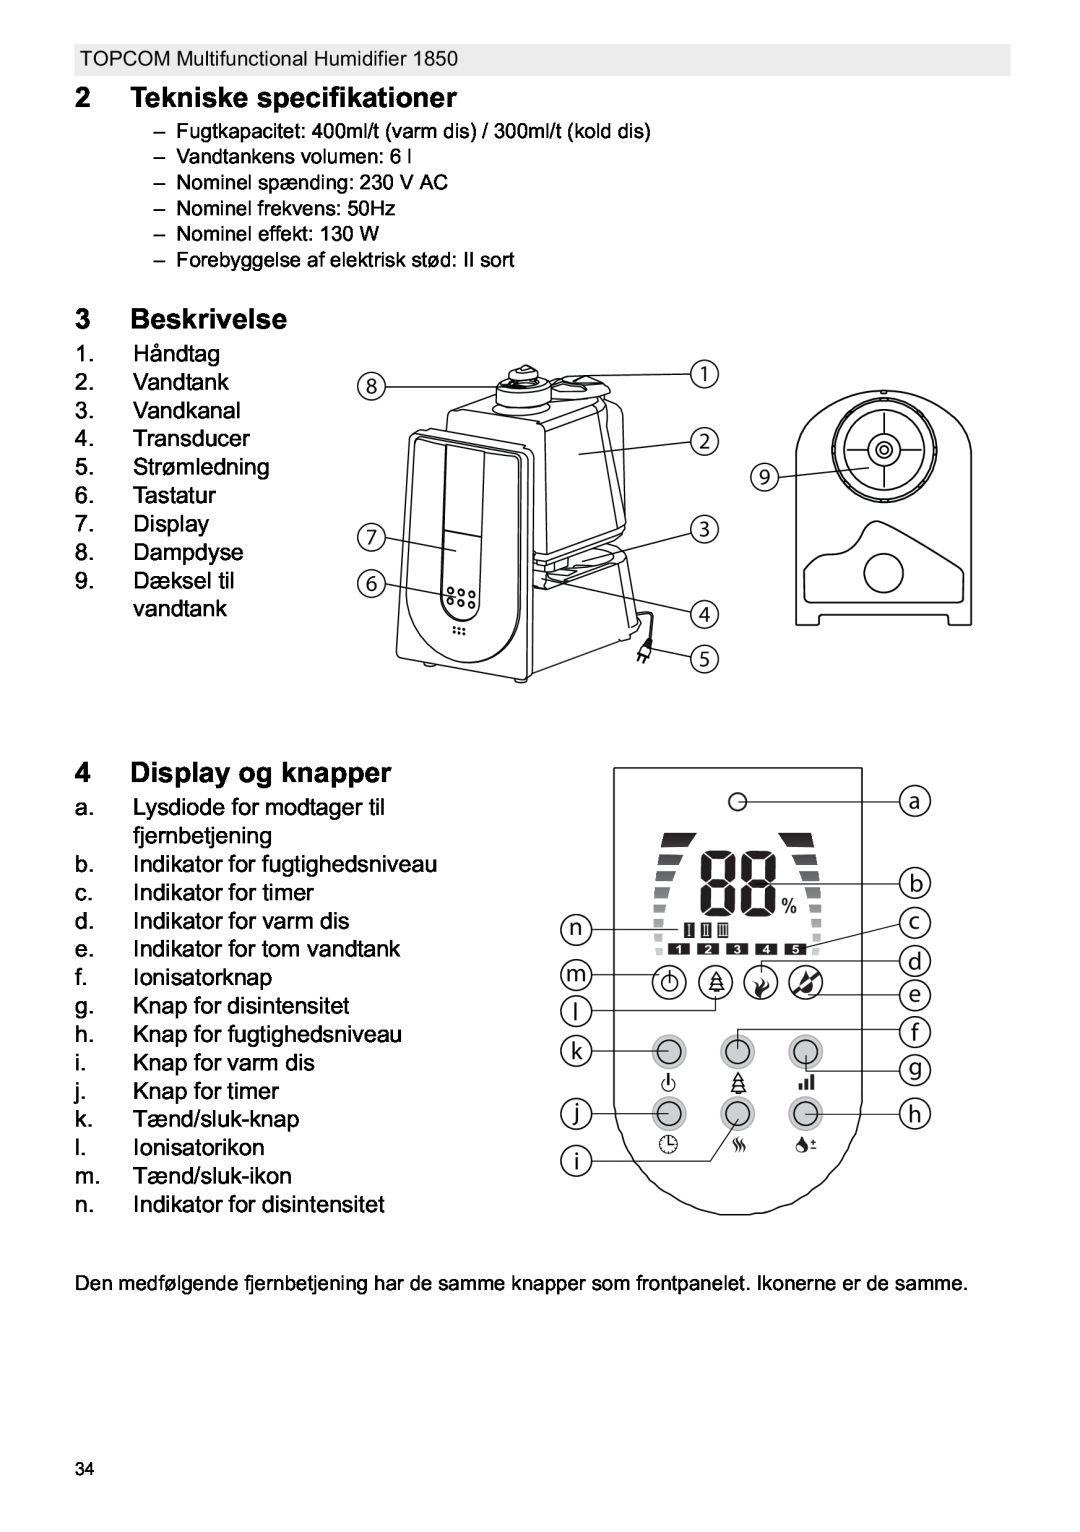 Topcom 1850 manual do utilizador Tekniske specifikationer, Beskrivelse, Display og knapper 